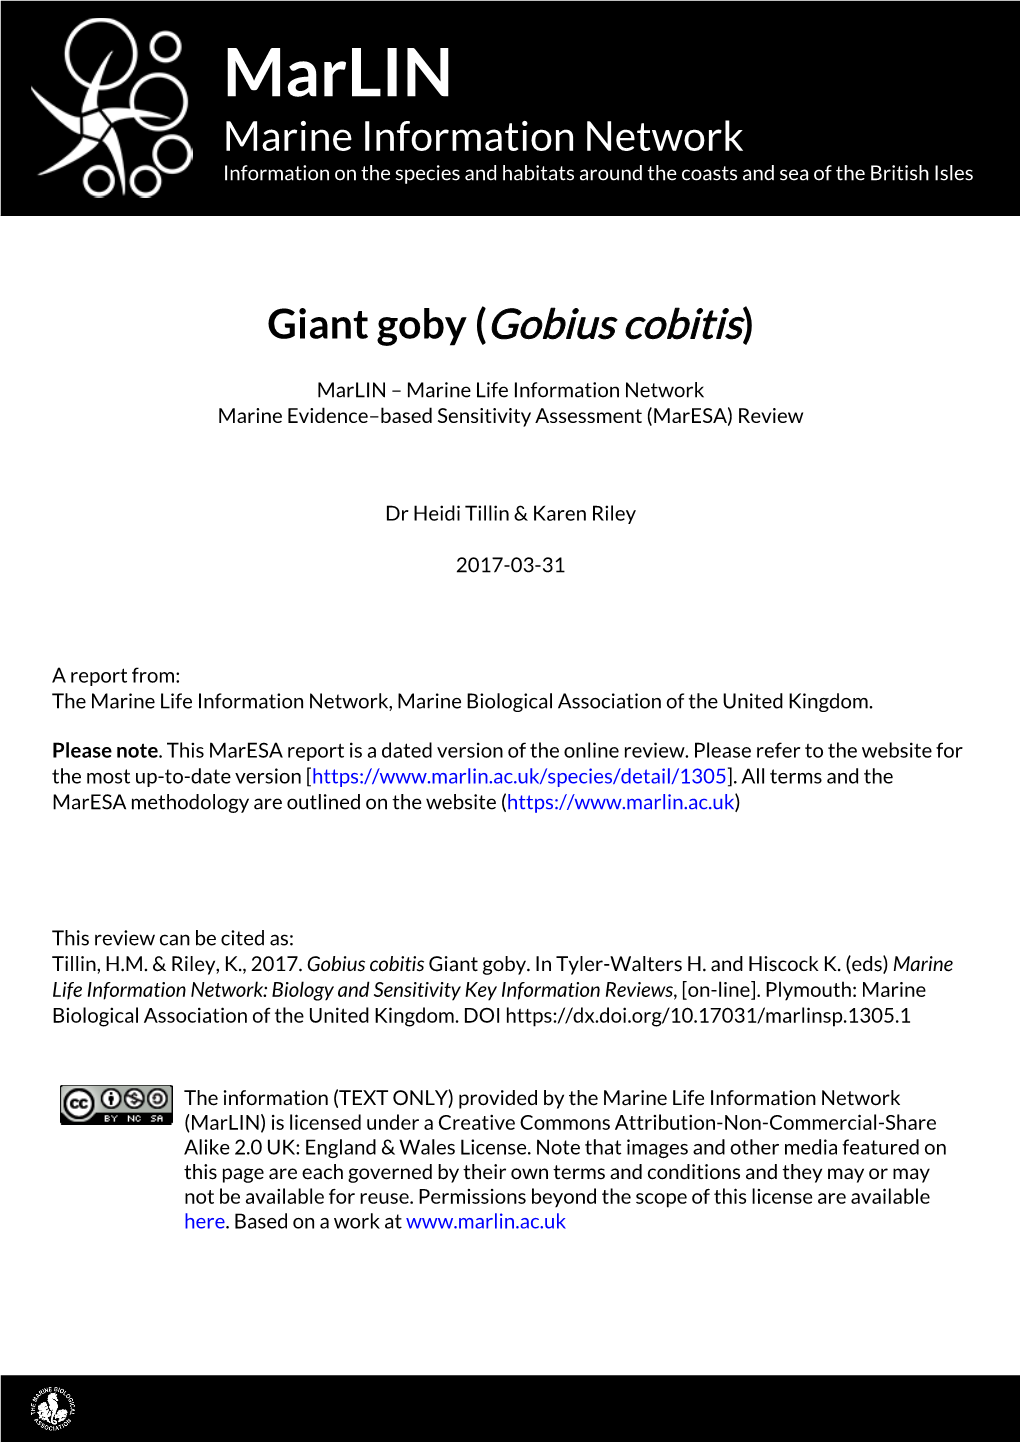 Giant Goby (Gobius Cobitis)